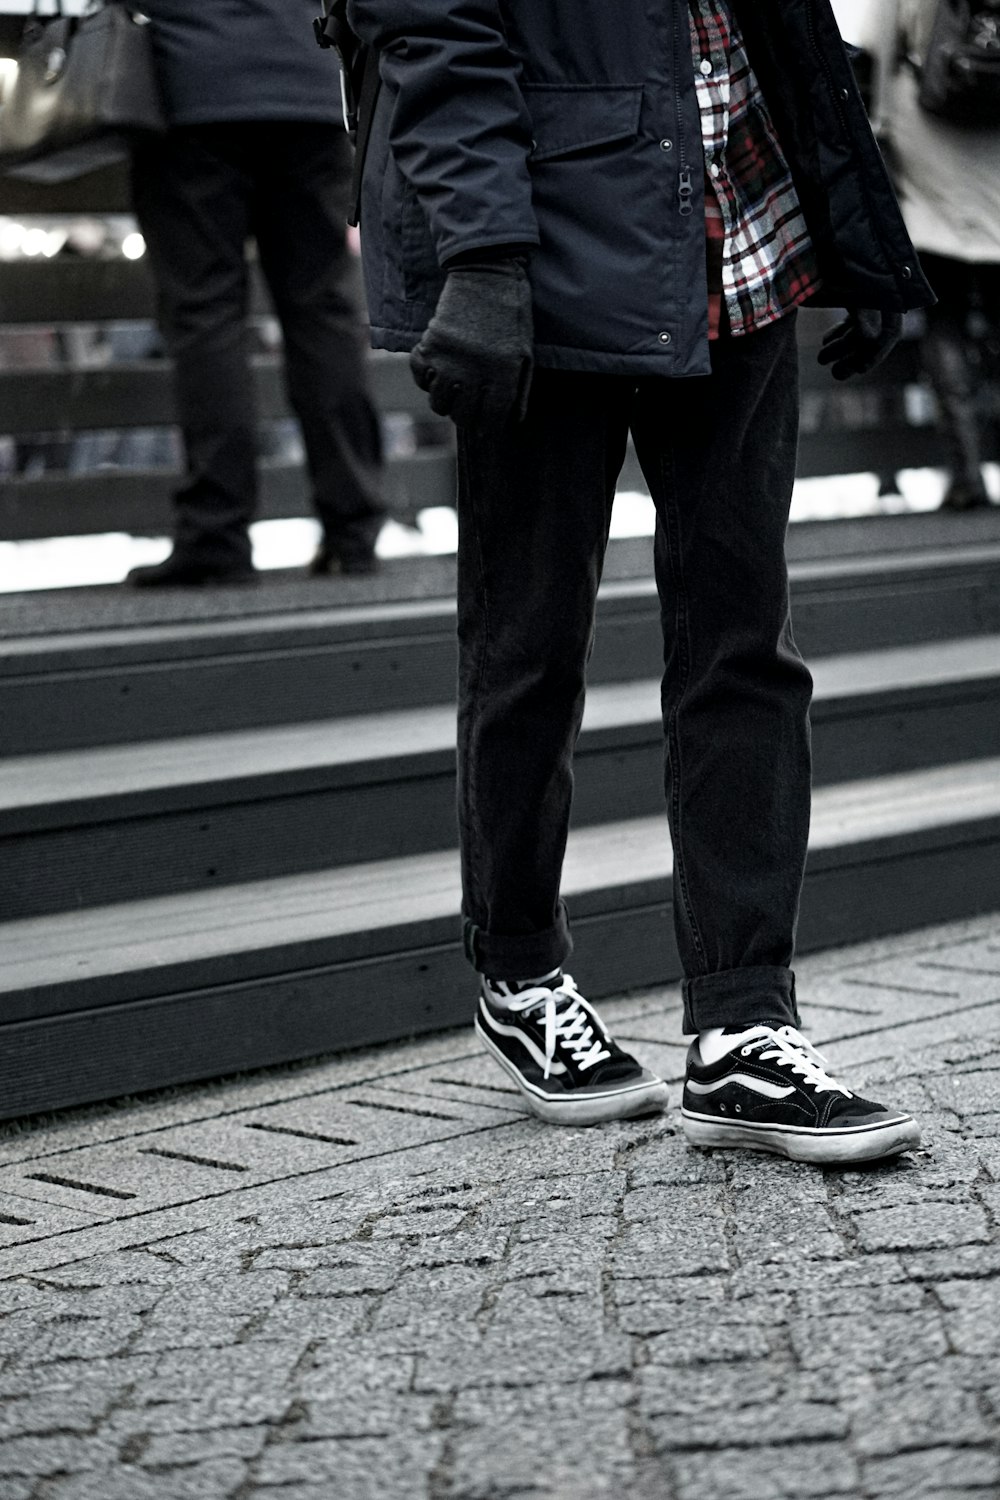 man wearing black Vans sneakers